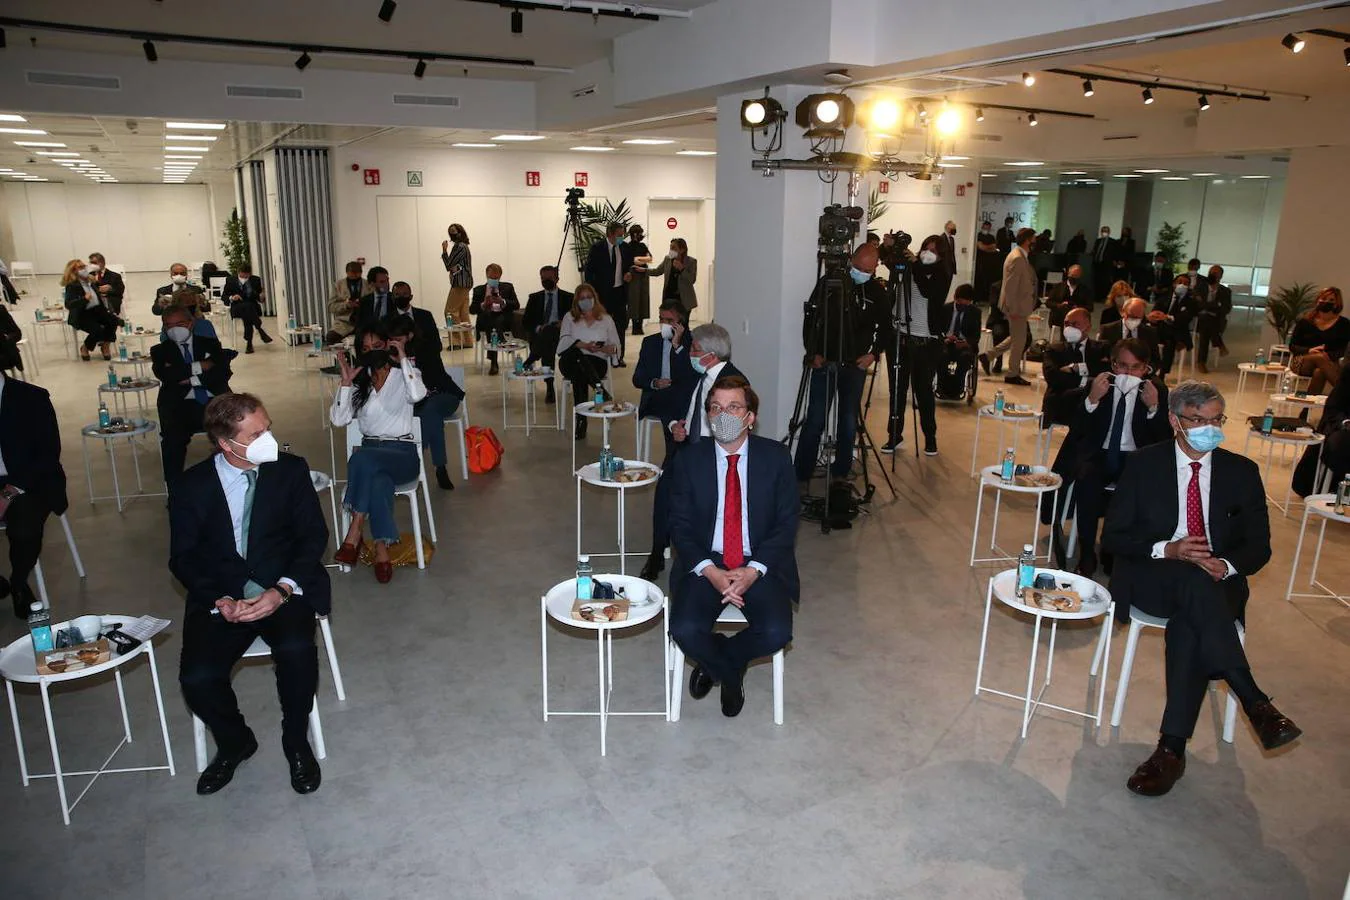 En imágenes: el Foro ABC-Deloitte celebrado en la sede de Vocento